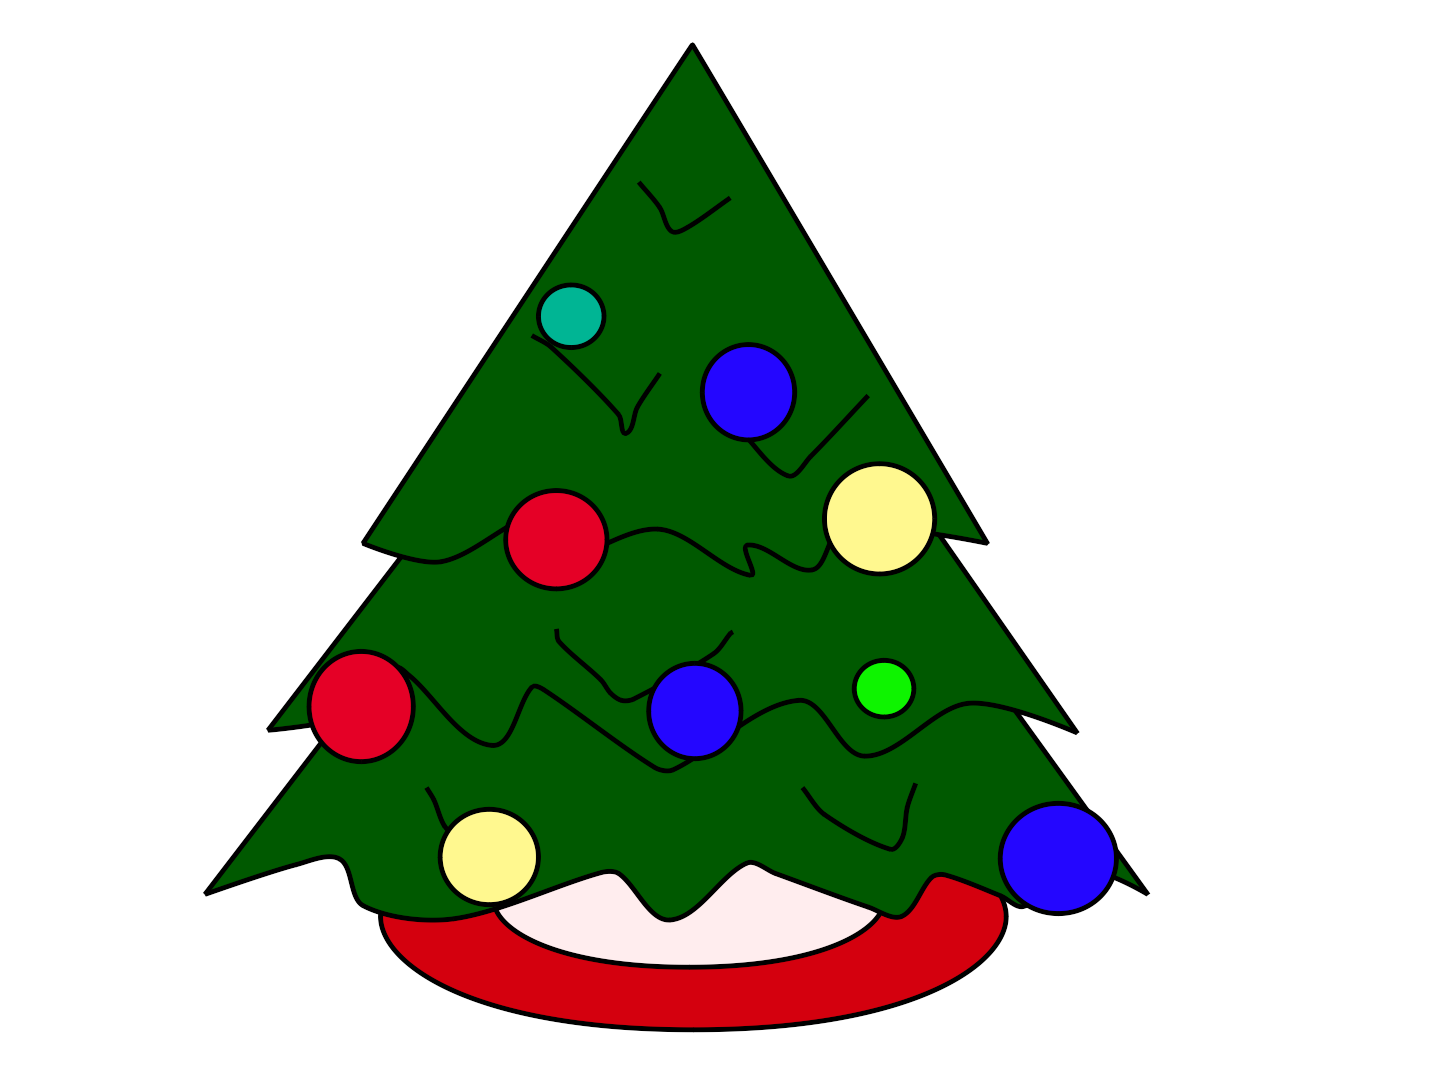 Anime Christmas Tree - Cartoon Trees for Christmas Day